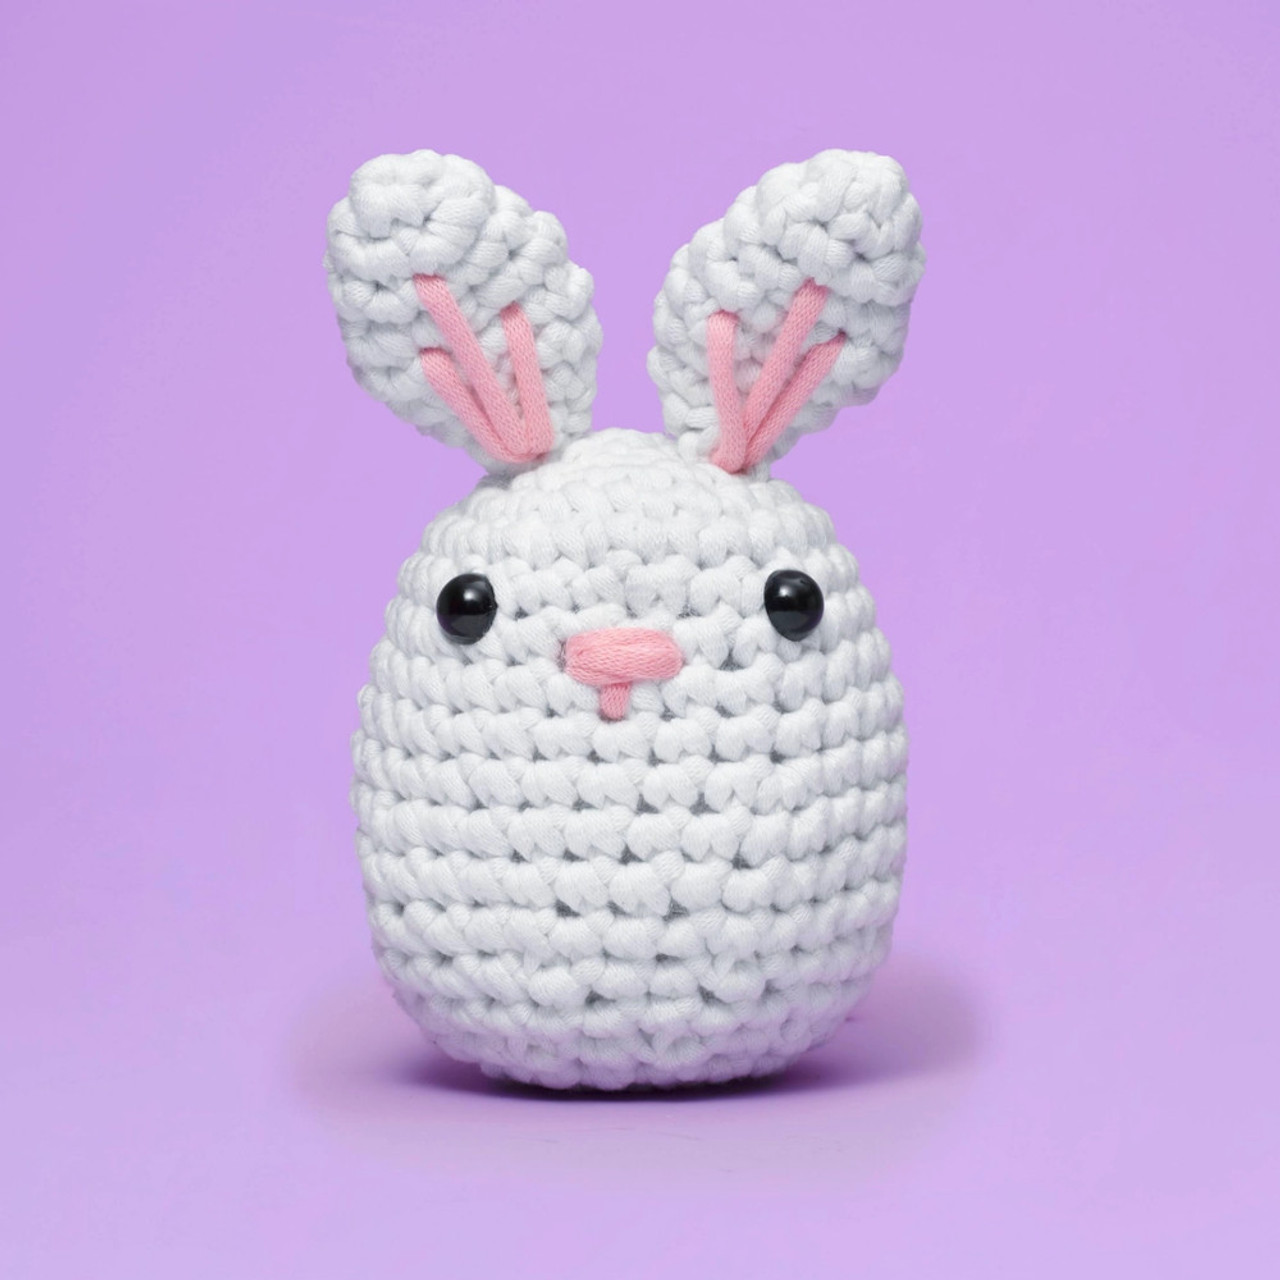 The Woobles - Jojo The Bunny Beginner Crochet Kit